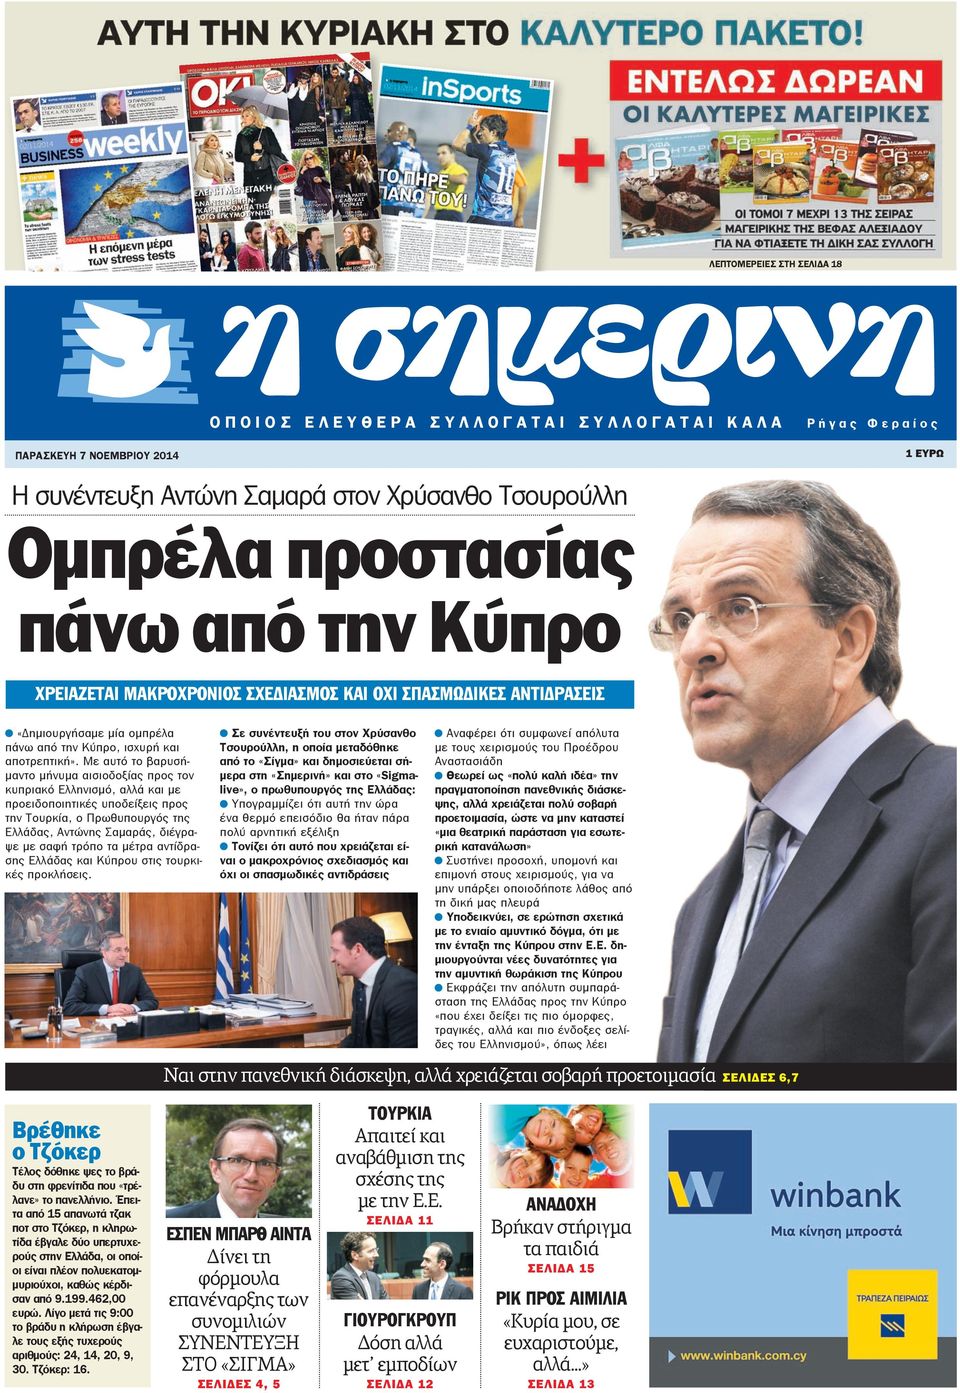 Με αυτό το βαρυσήμαντο μήνυμα αισιοδοξίας προς τον κυπριακό Ελληνισμό, αλλά και με προειδοποιητικές υποδείξεις προς την Τουρκία, ο Πρωθυπουργός της Ελλάδας, Αντώνης Σαμαράς, διέγραψε με σαφή τρόπο τα